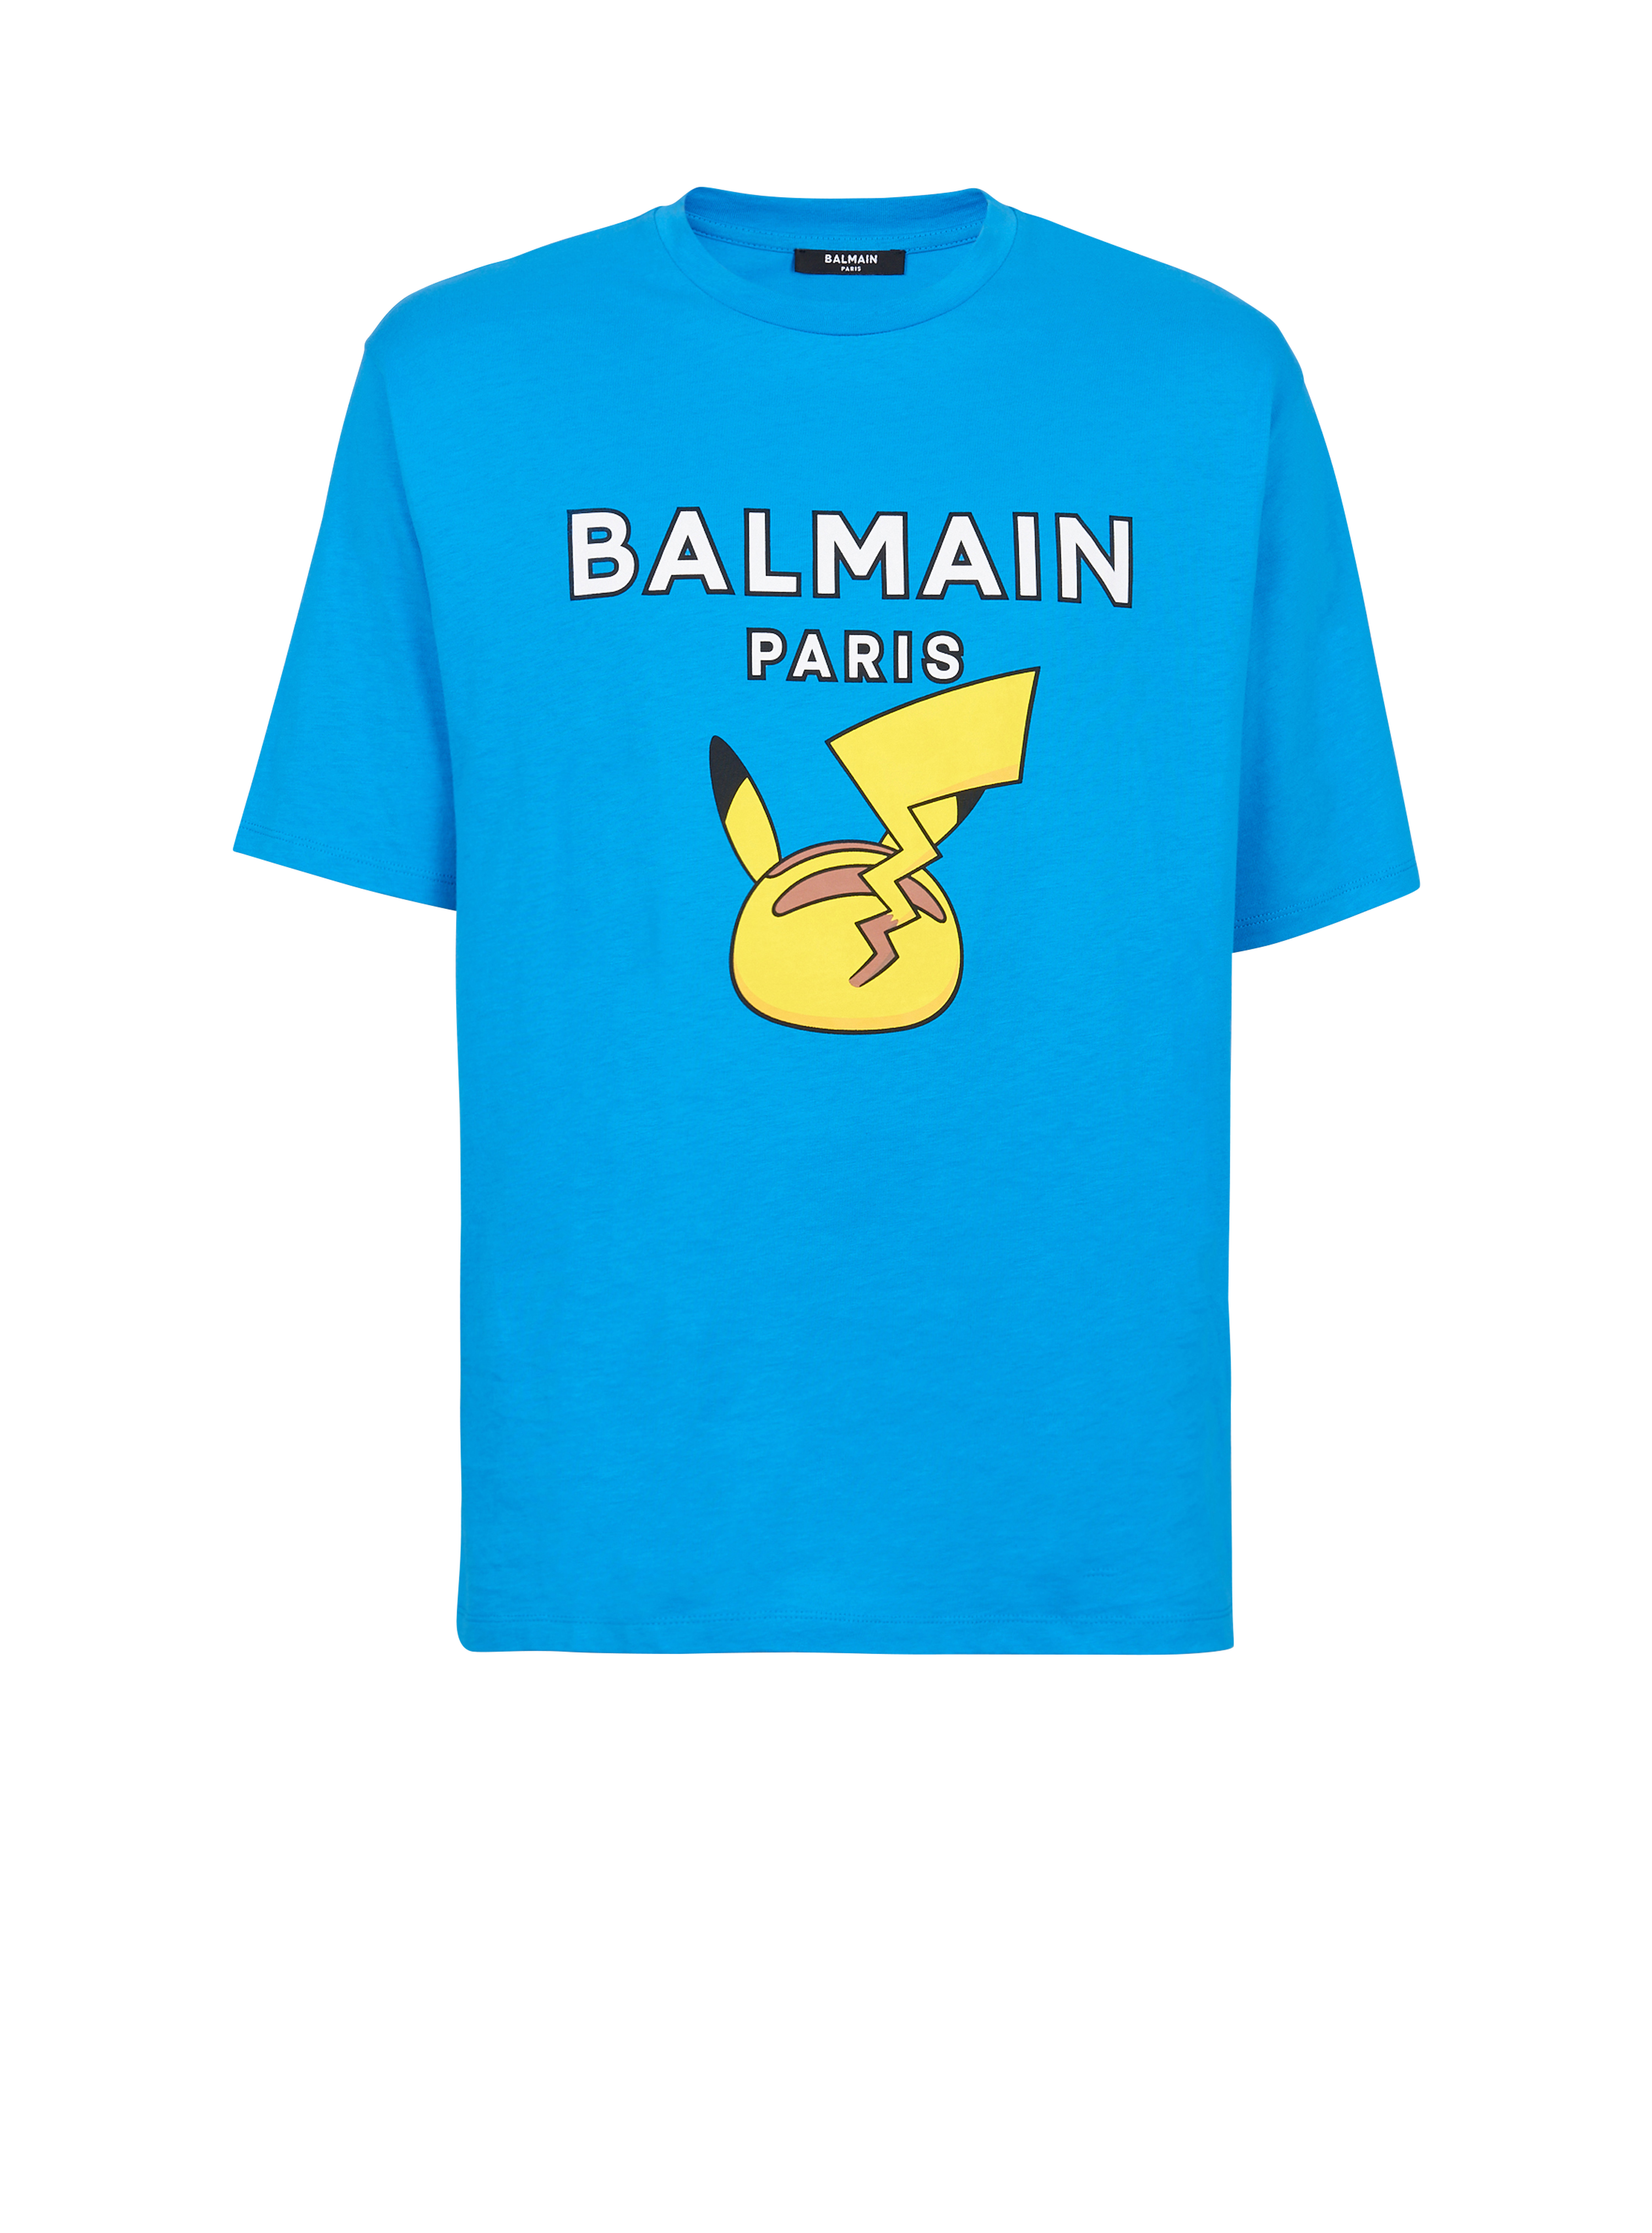 Unisex - Pokémon print cotton T-shirt, blue